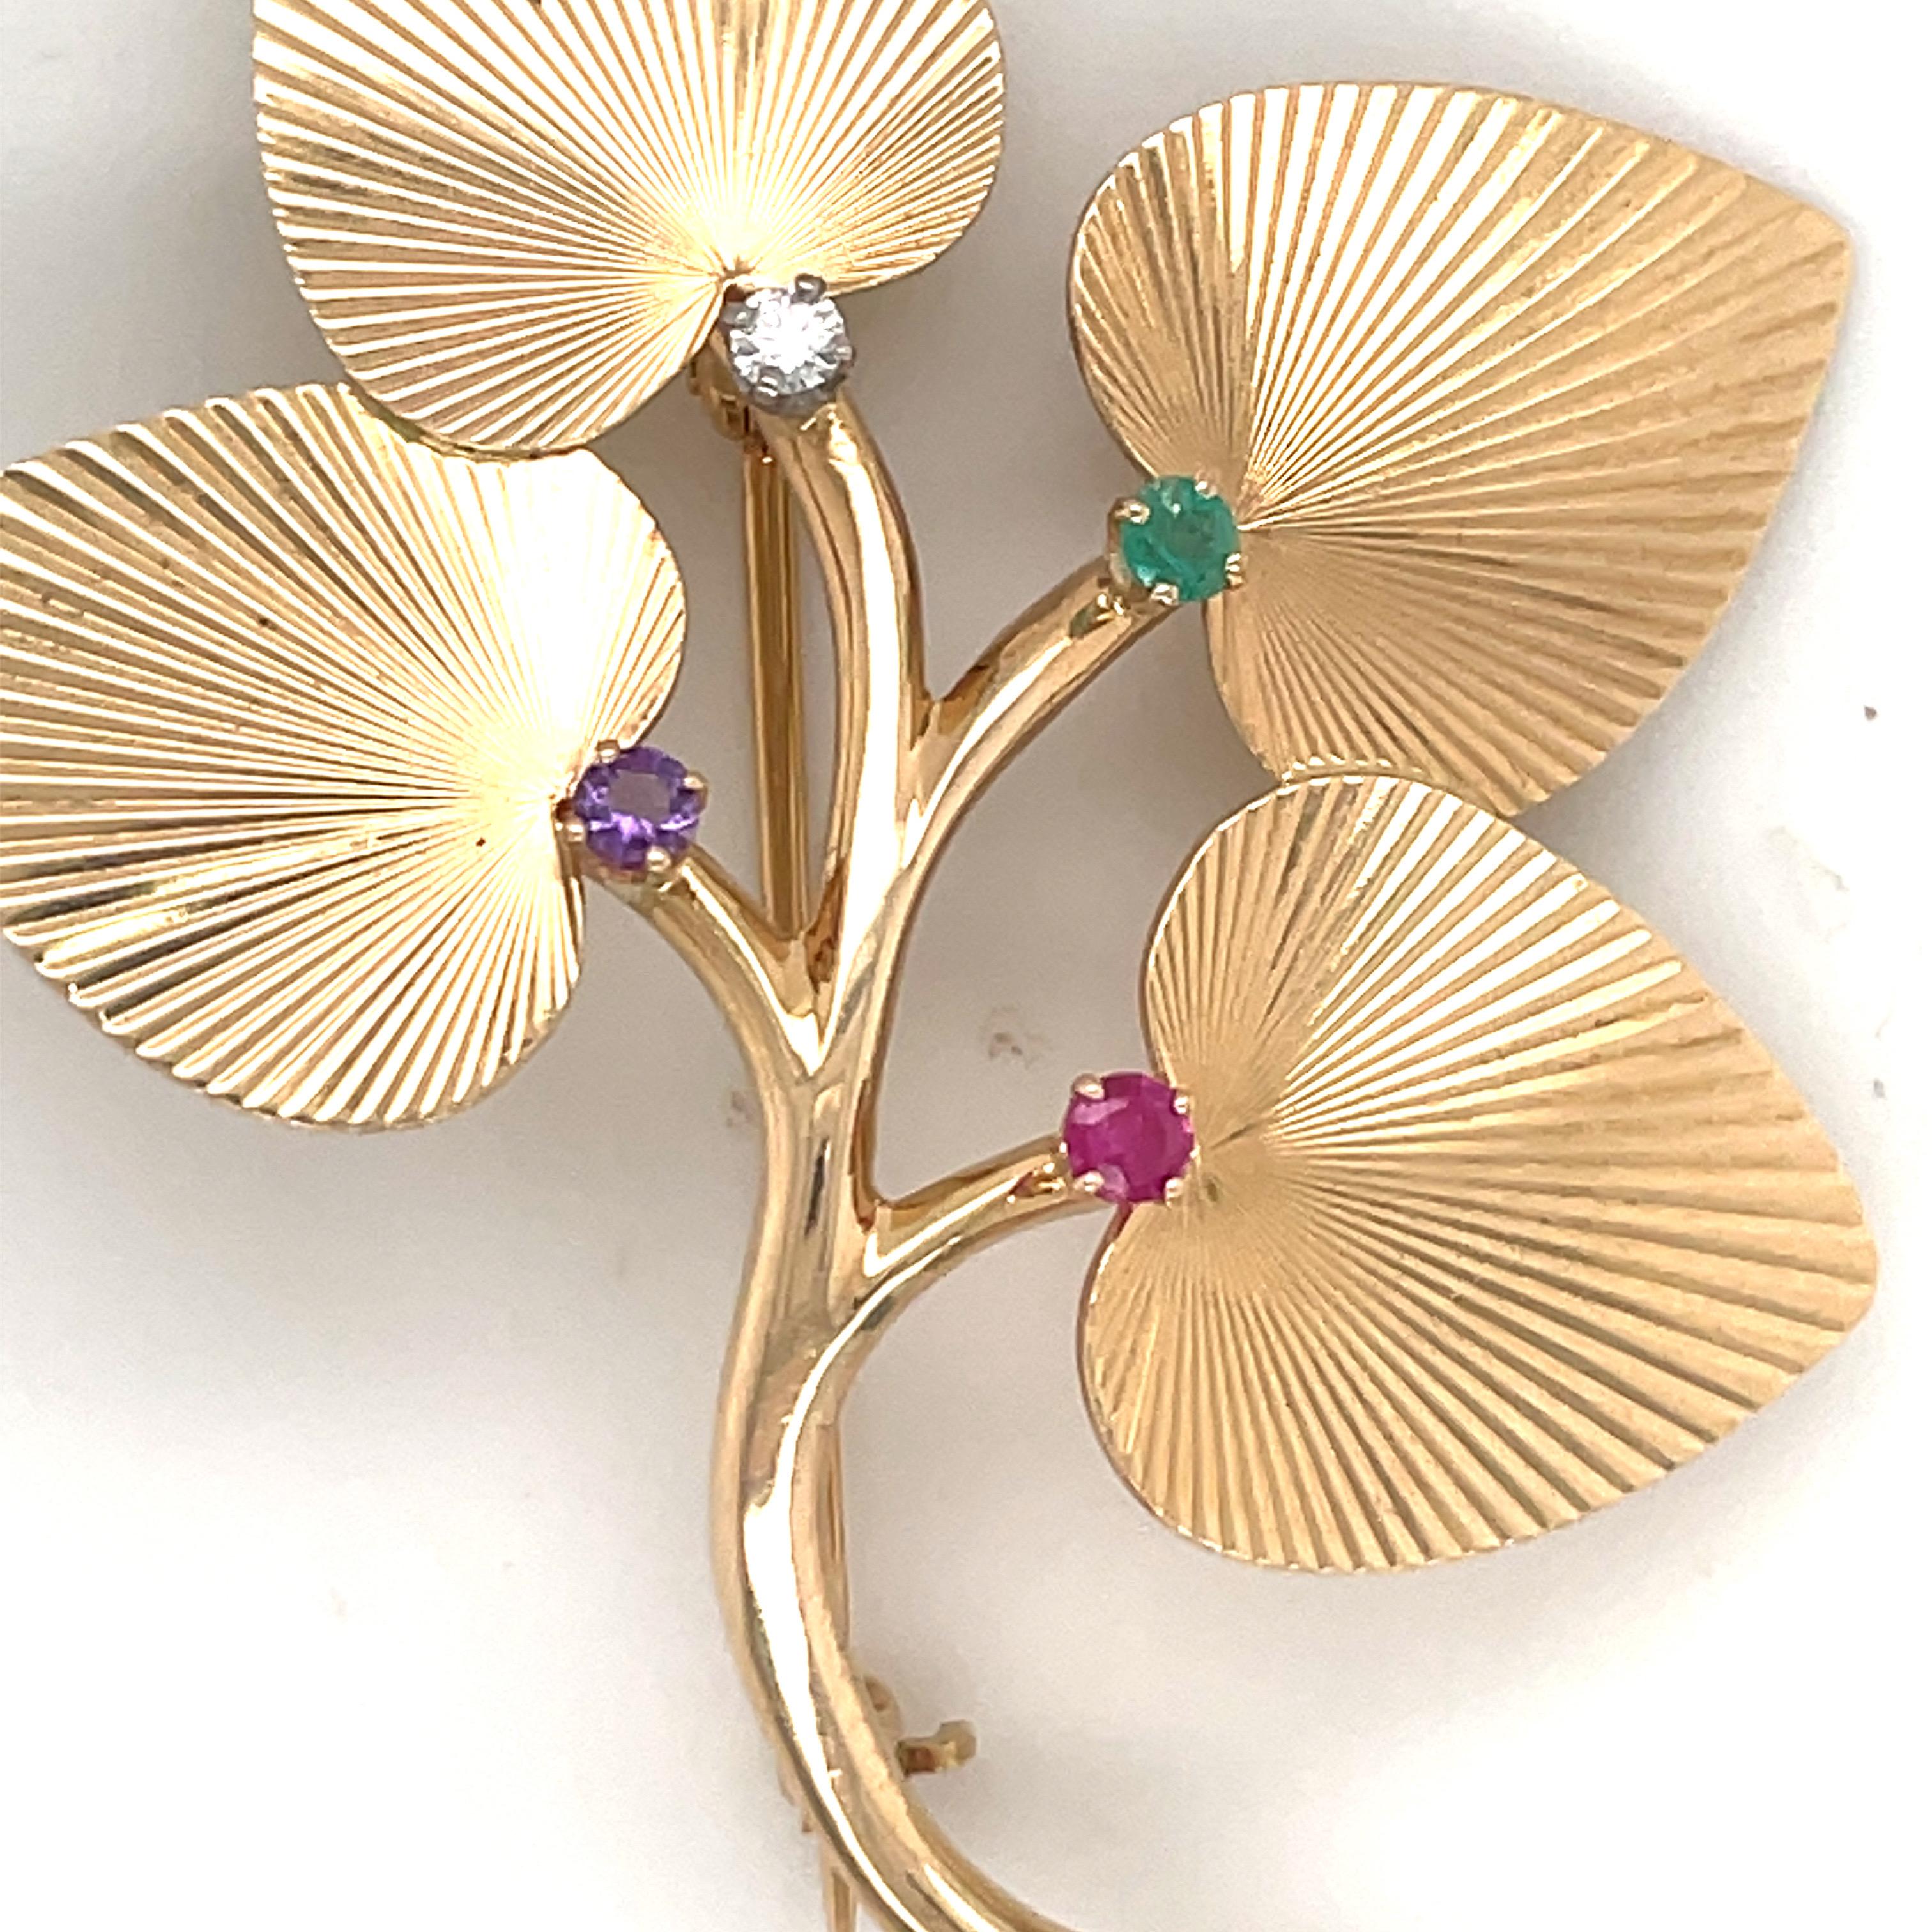 Estampillée Tiffany & Co, cette broche florale ornée d'un diamant, d'une émeraude, d'un rubis et d'une améthyste est réalisée en or jaune 14 carats.
Boucles d'oreilles assorties. 